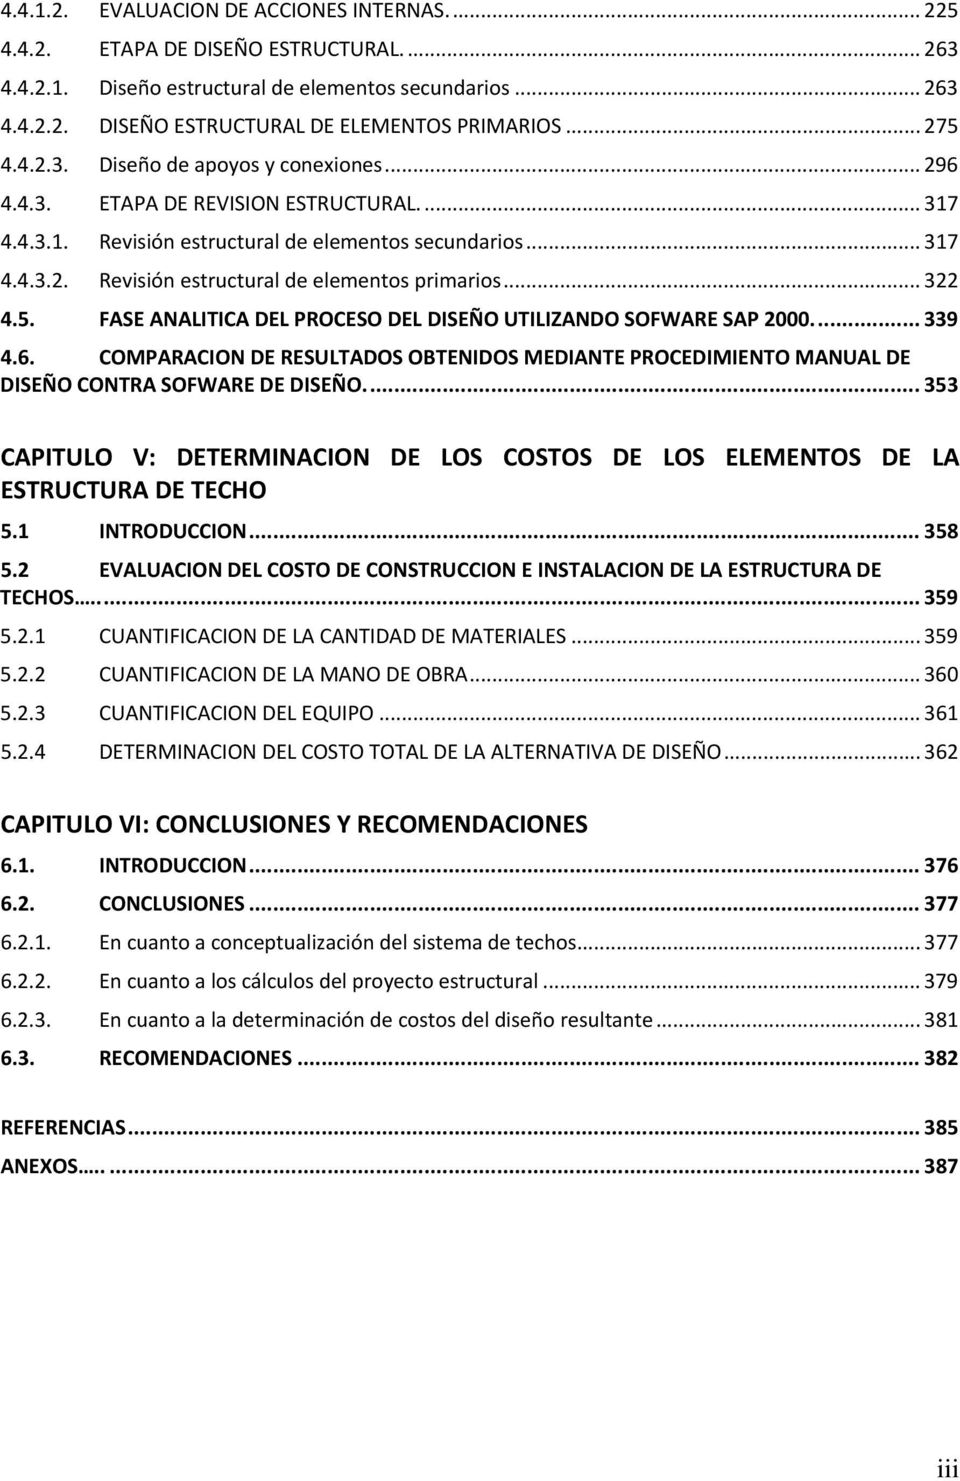 .. 322 4.5. FASE ANALITICA DEL PROCESO DEL DISEÑO UTILIZANDO SOFWARE SAP 2000.... 339 4.6. COMPARACION DE RESULTADOS OBTENIDOS MEDIANTE PROCEDIMIENTO MANUAL DE DISEÑO CONTRA SOFWARE DE DISEÑO.